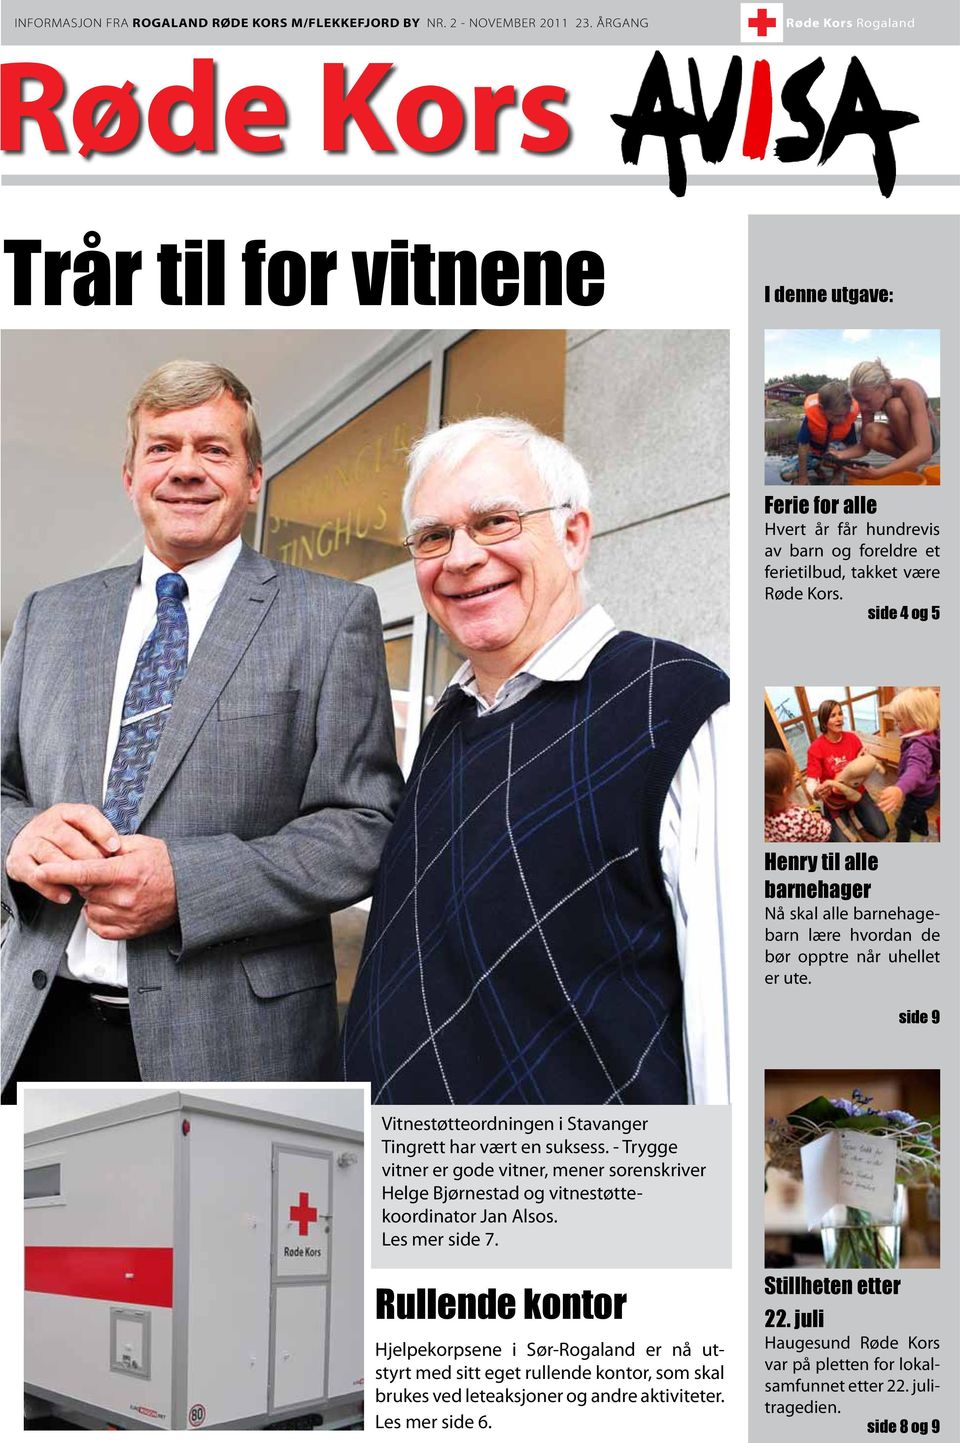 side 4 og 5 Henry til alle barnehager Nå skal alle barnehagebarn lære hvordan de bør opptre når uhellet er ute. side 9 Vitnestøtteordningen i Stavanger Tingrett har vært en suksess.